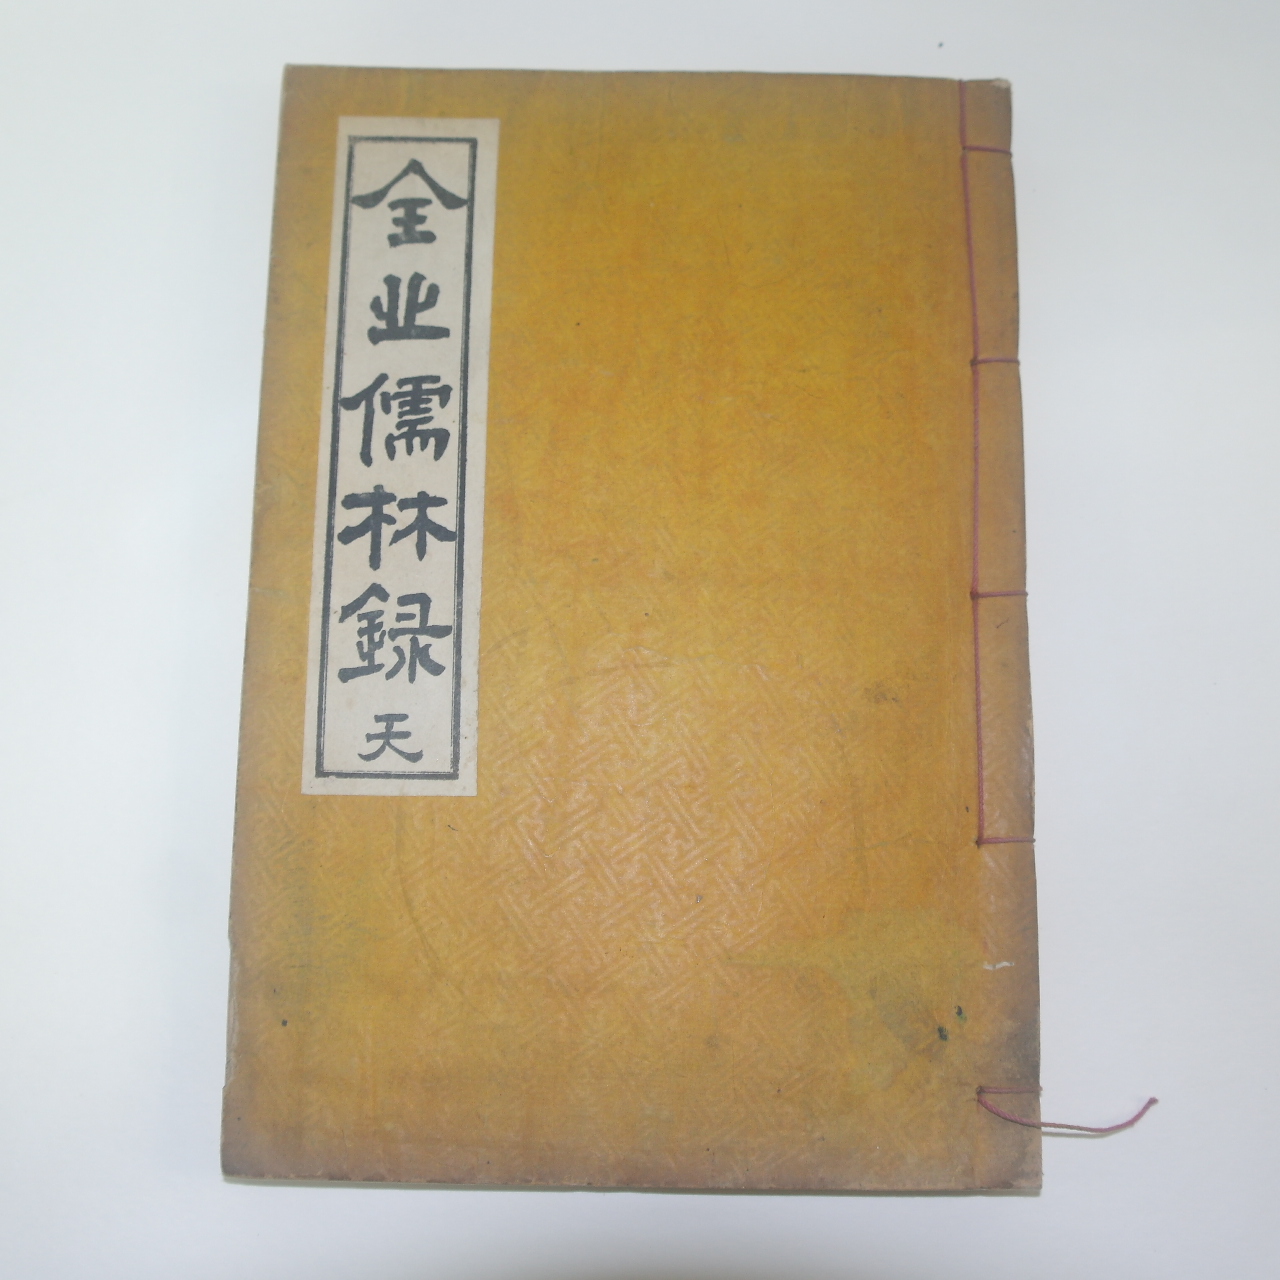 1964년 전북유림록(全北儒林錄)권1,2  1책